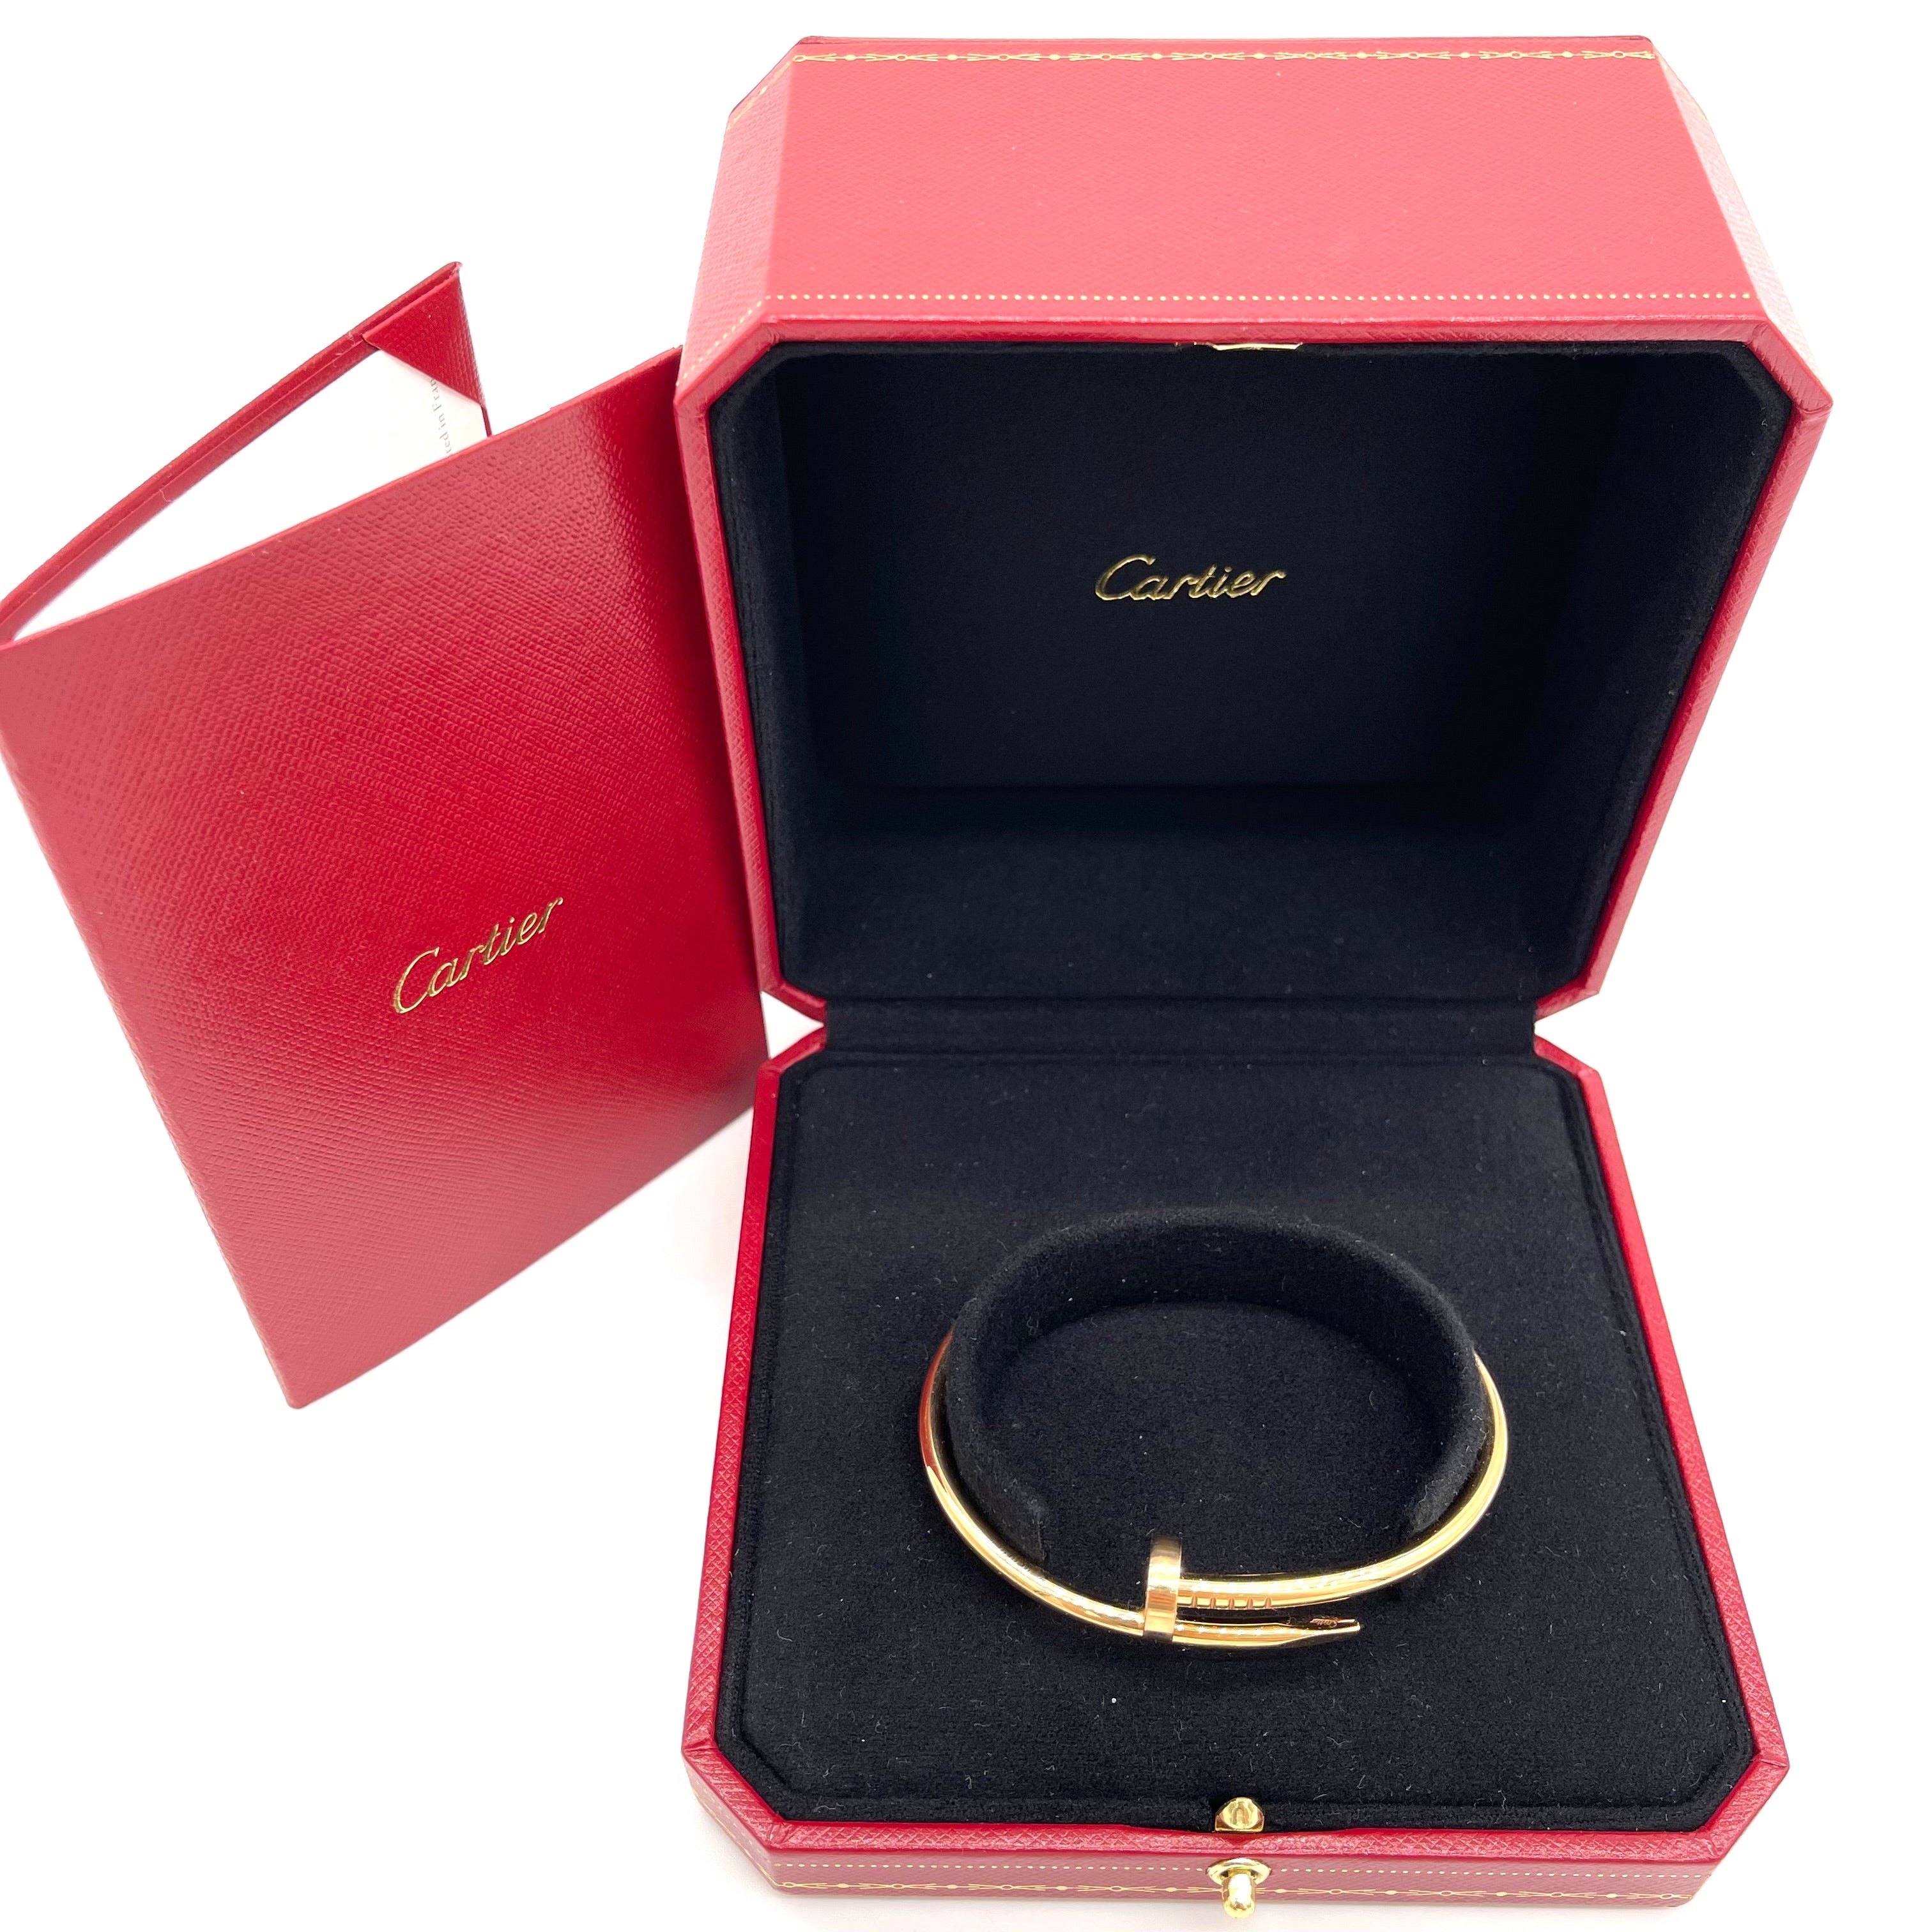 Louis Vuitton 18 Karat Yellow Gold Diamond Clous Bangle Bracelet